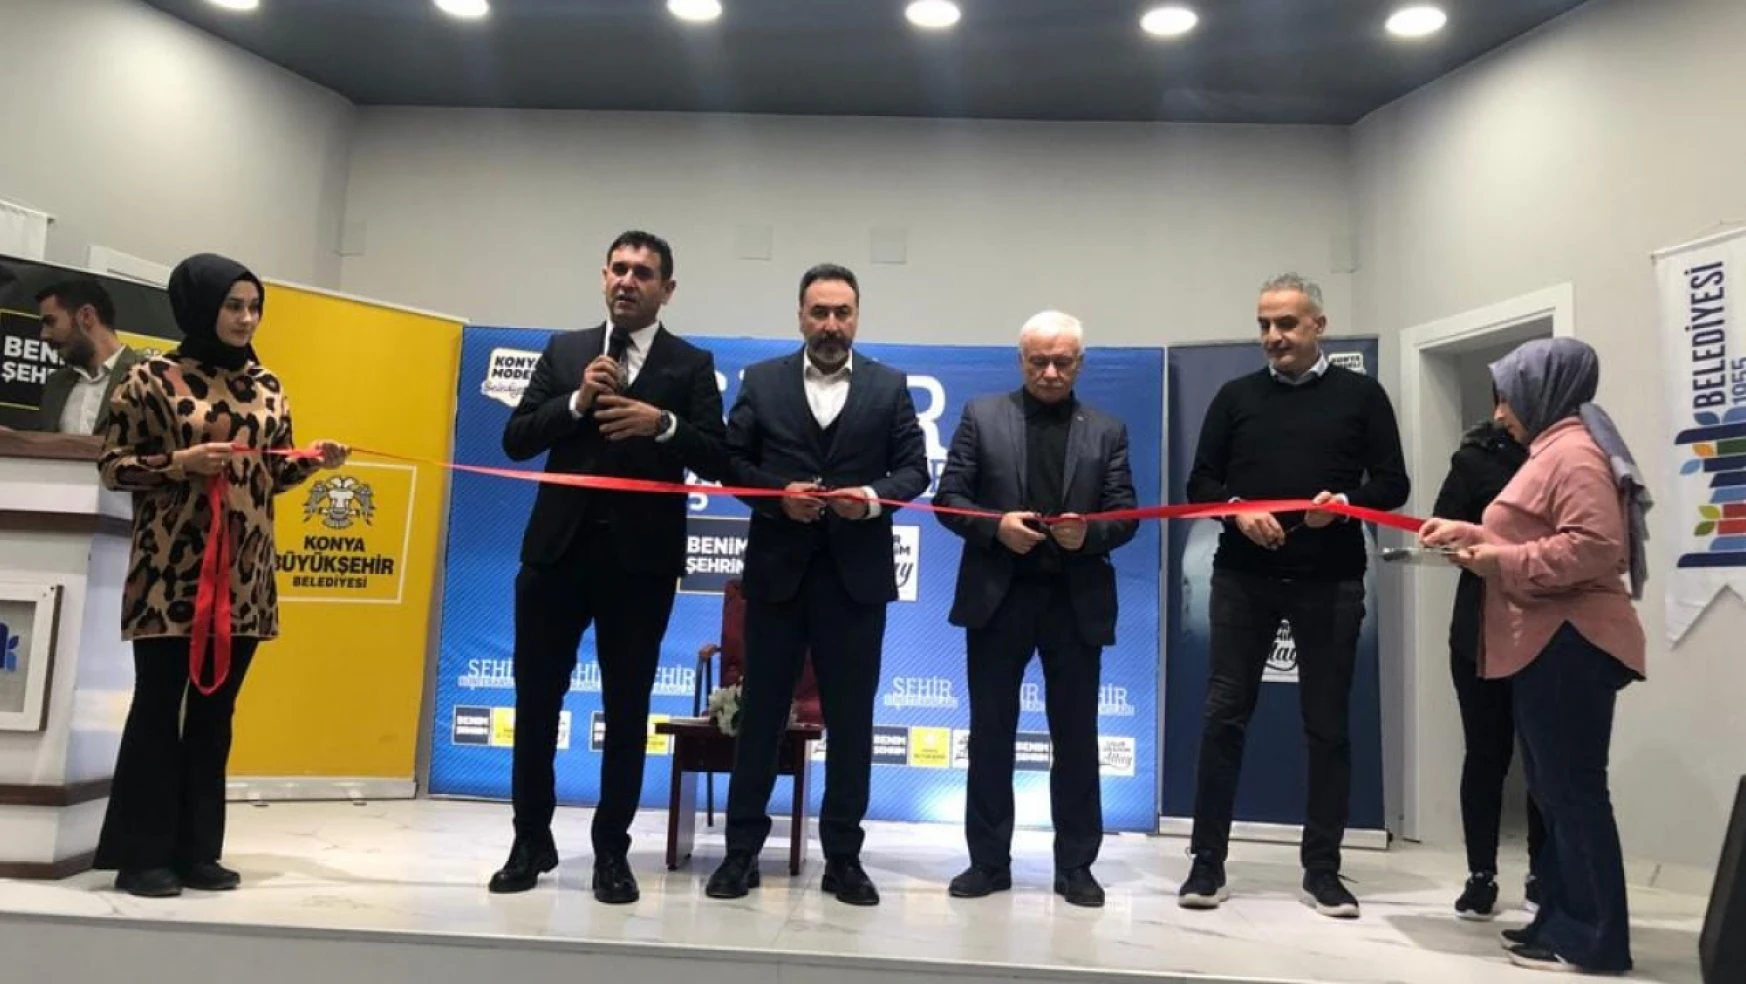 Ünlü isim Konya'da Kültür Merkezini açtı!